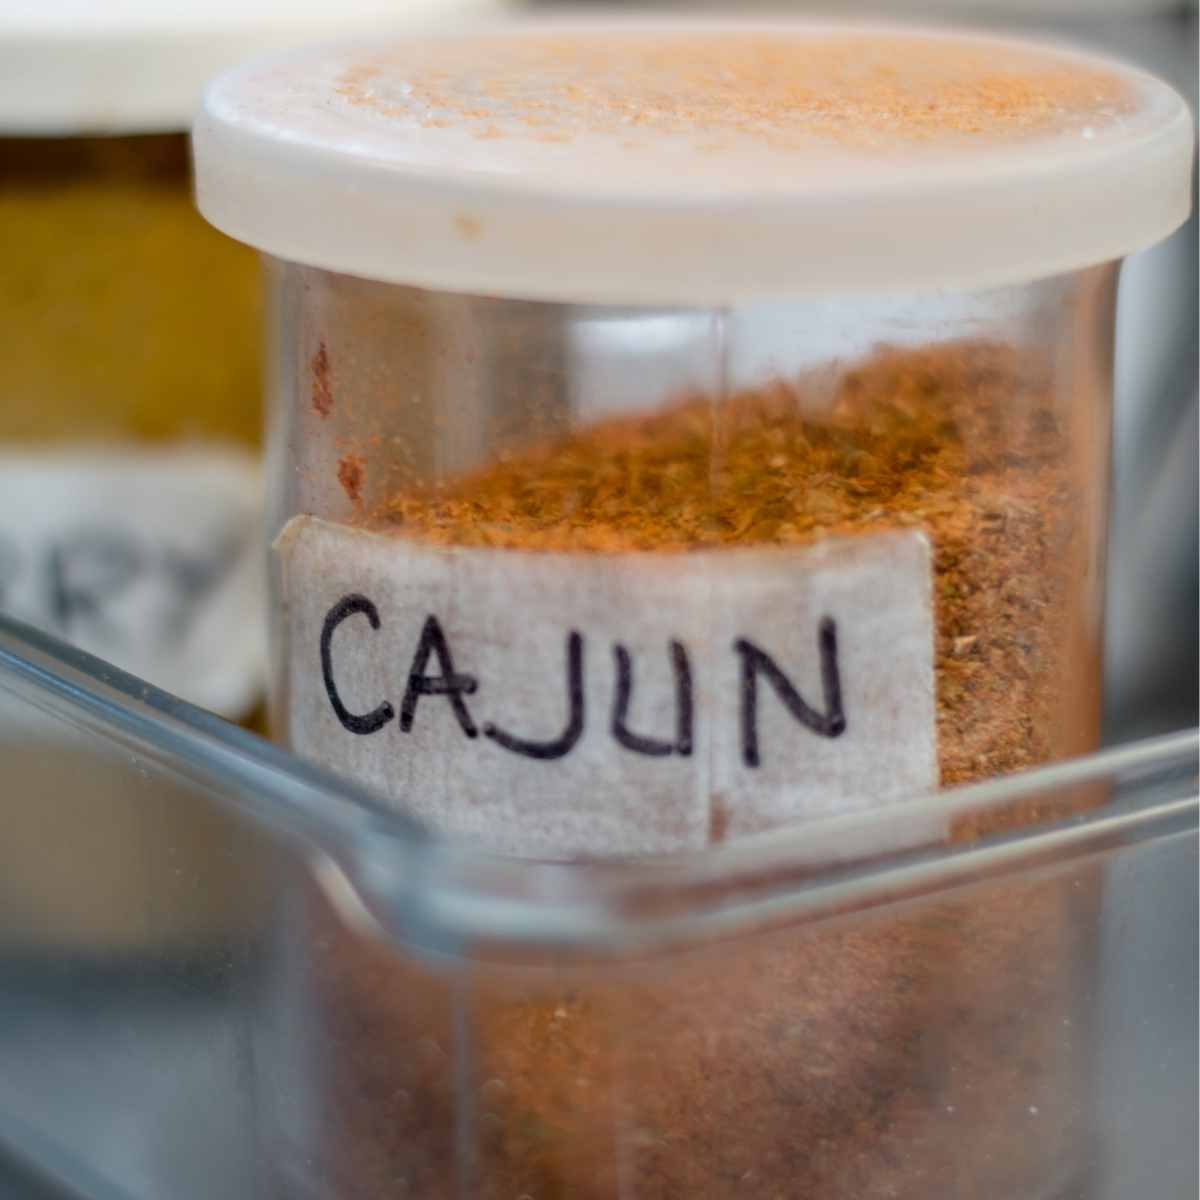 cajun in the spice box